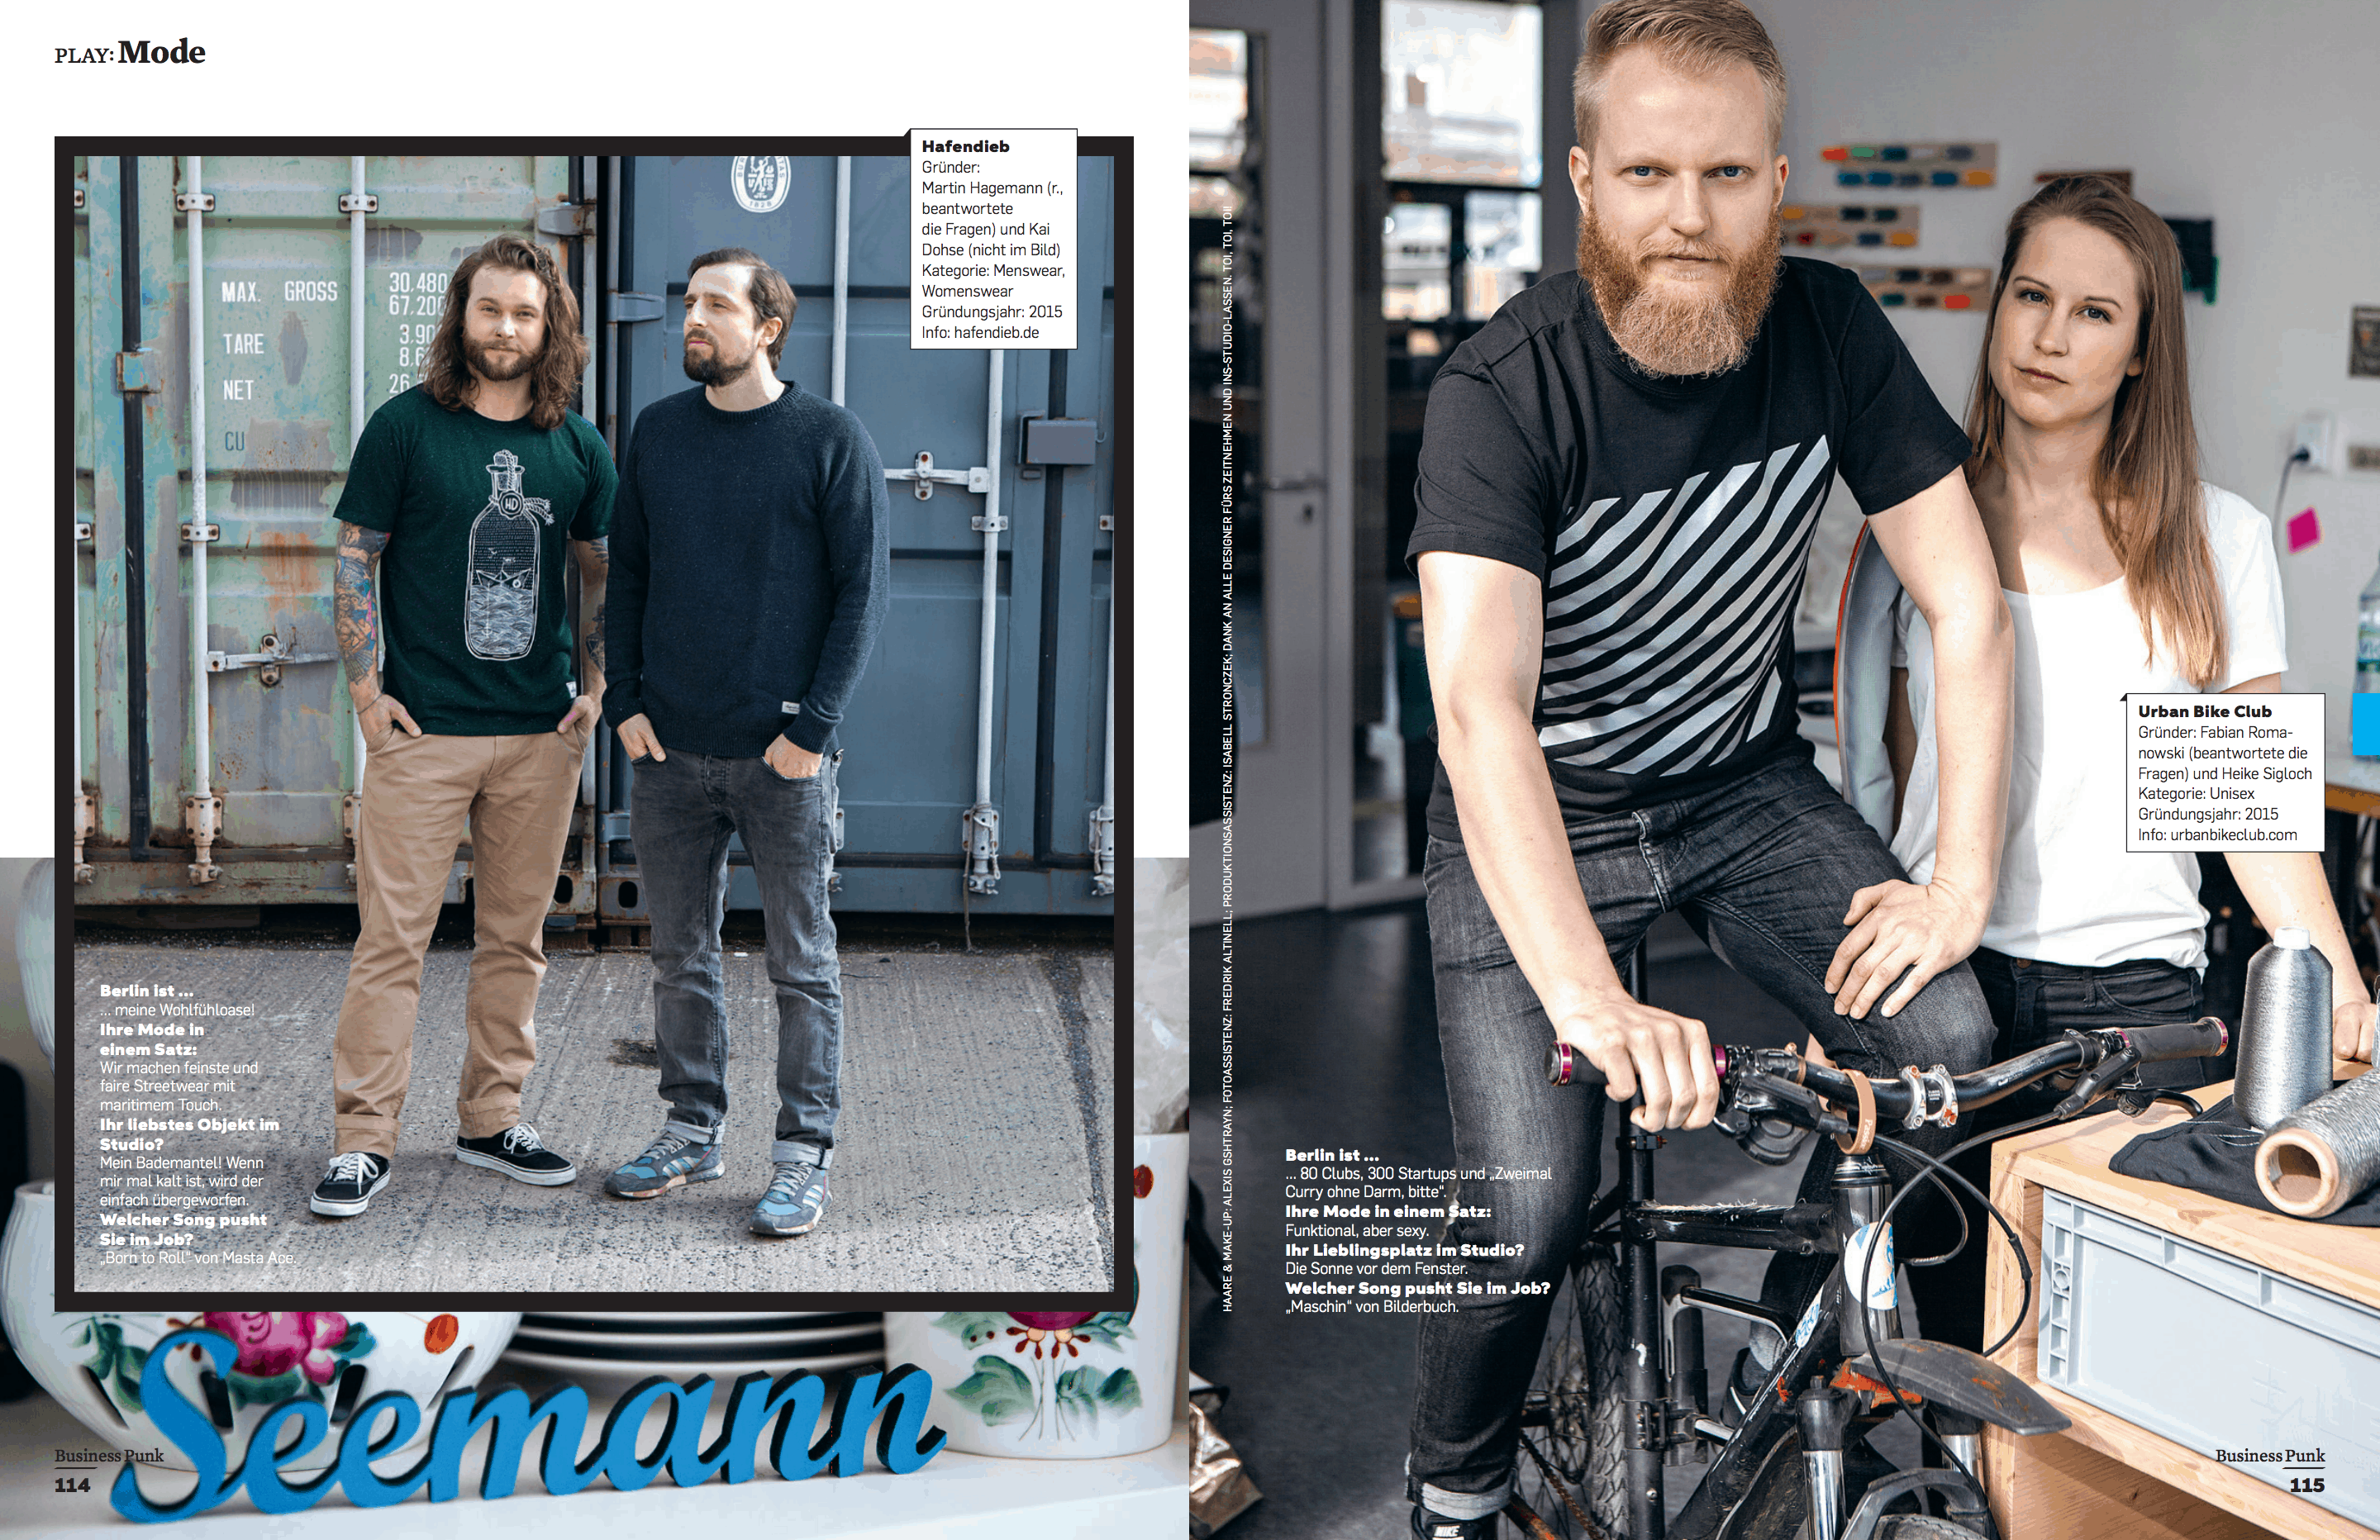 Berlin als Mode-Sprungbrett (für Business Punk)